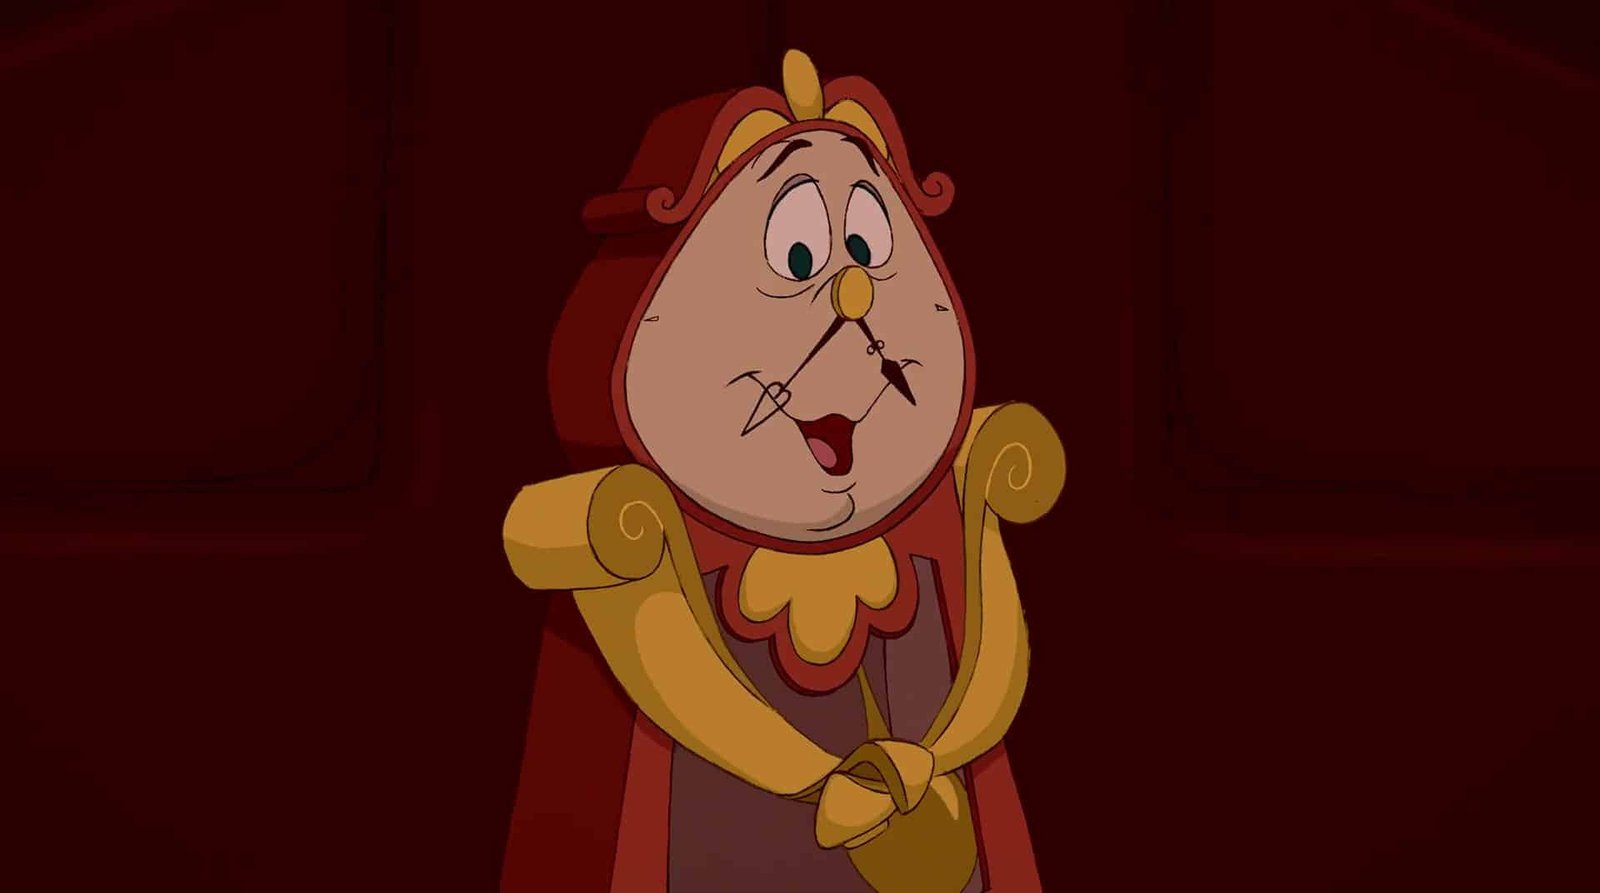 Une image animée de Cogsworth, le personnage de l'horloge de Disney's Beauty and the Beast, l'air surpris avec ses mains jointes. Il a un visage rond, une moustache blanche et porte